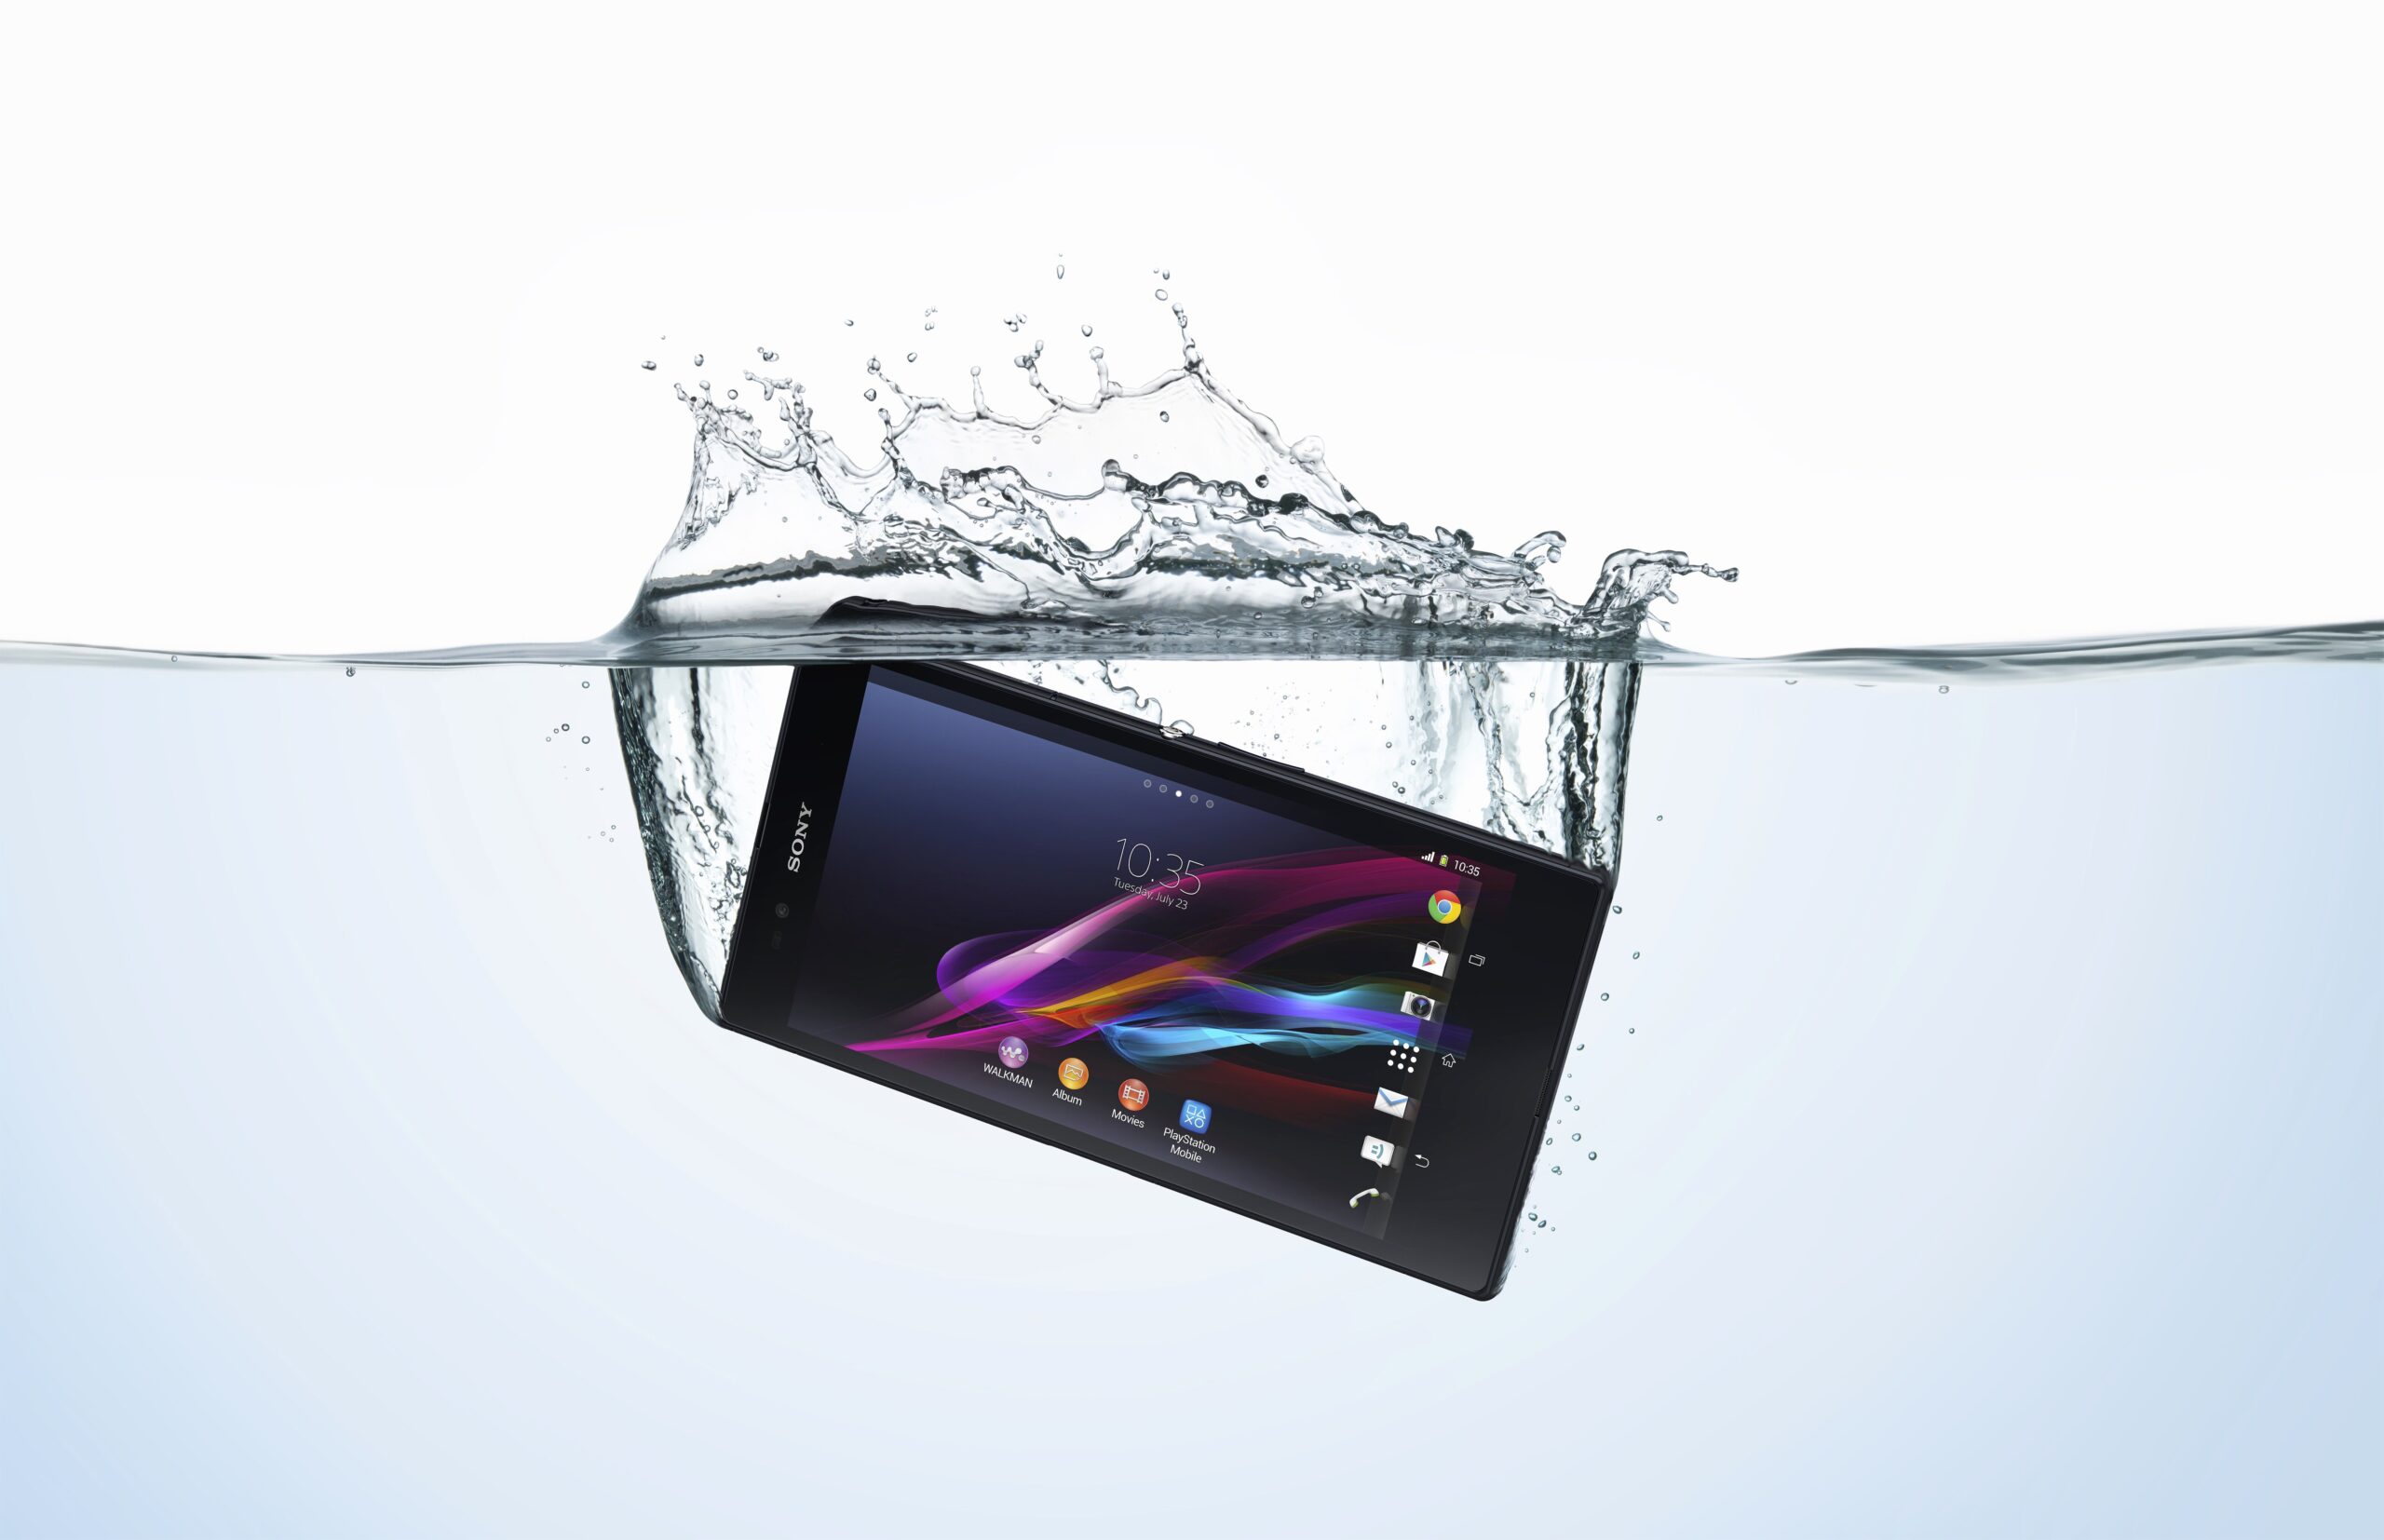 SOS: come salvare lo smartphone caduto in acqua